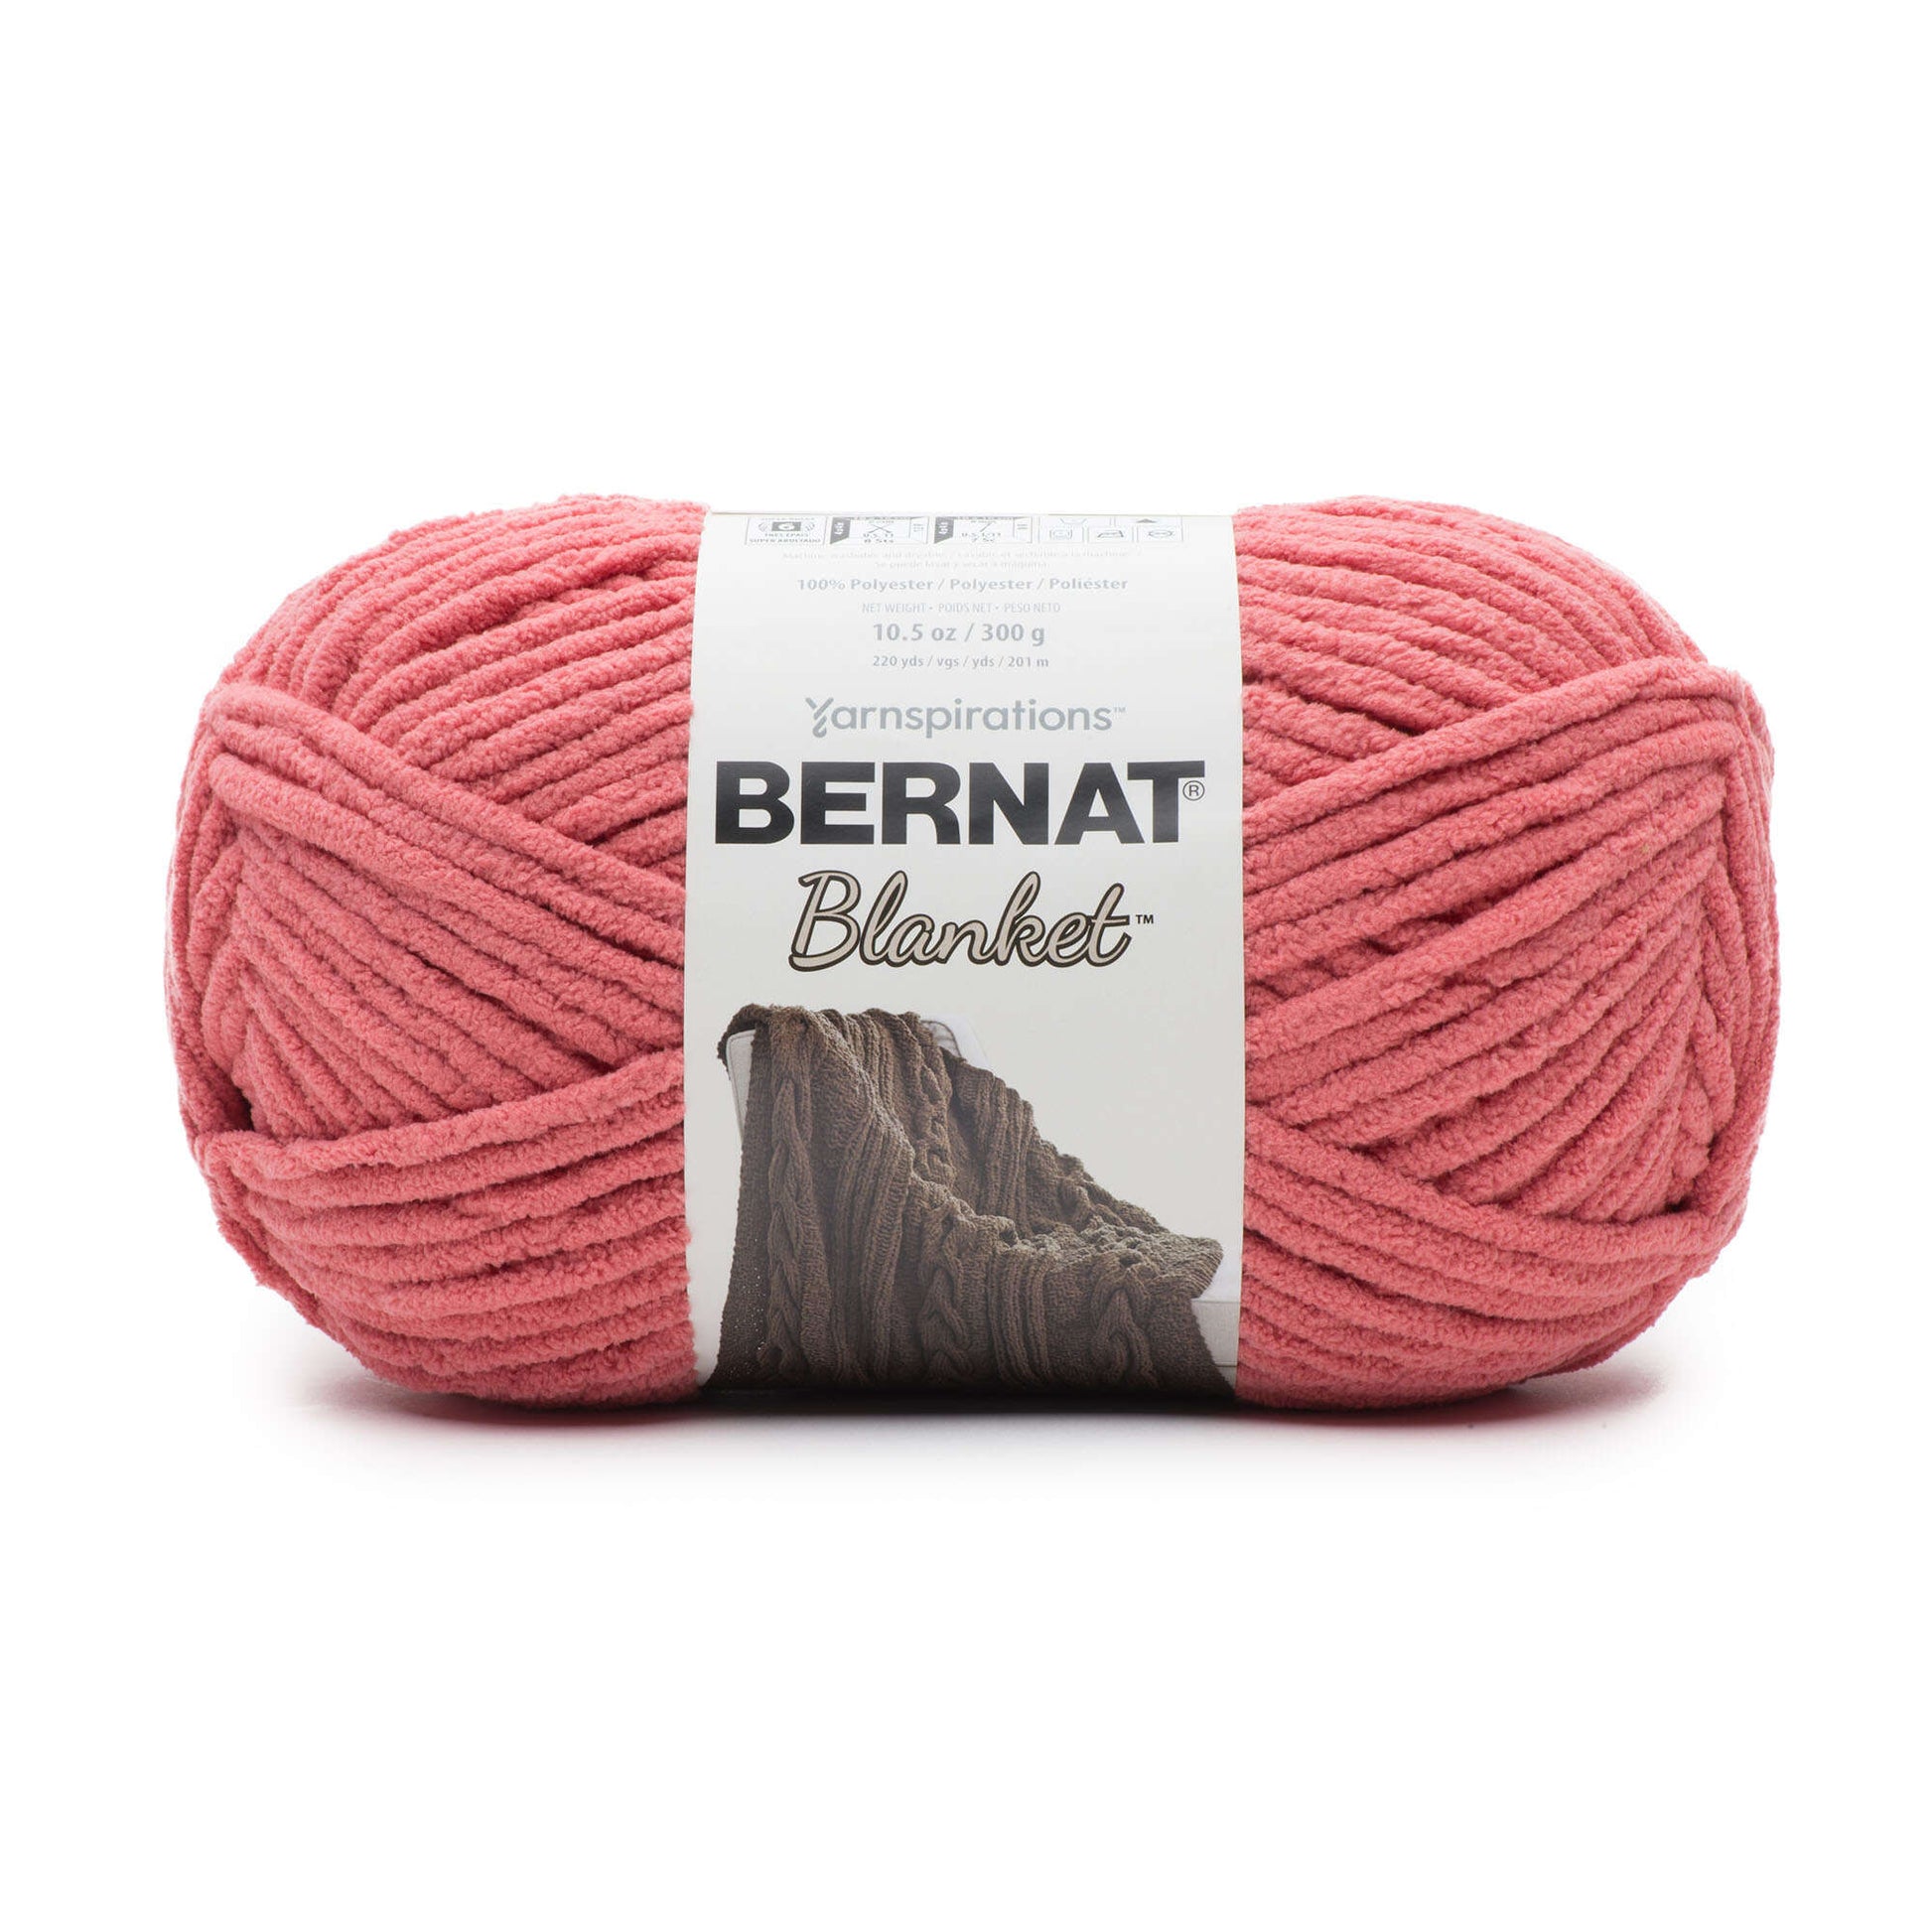 Bernat Blanket Yarn (300g/10.5oz) Terracotta Rose